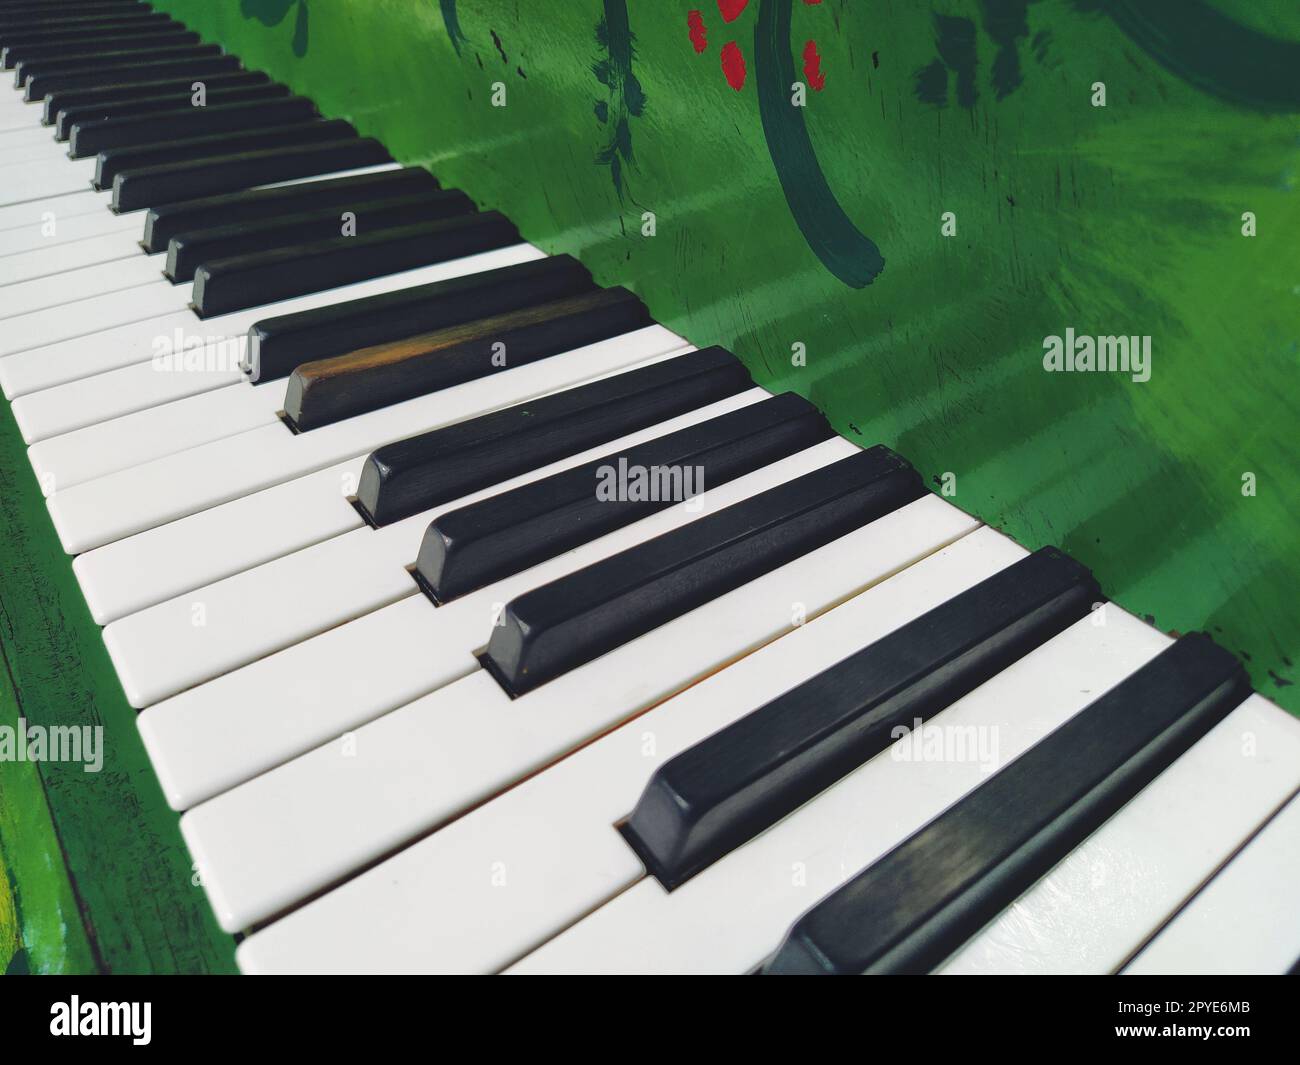 Un pianoforte o pianoforte è uno strumento musicale a percussione e tastiera. Un'ottava è un intervallo musicale in cui il rapporto delle frequenze tra i suoni è uno a due. Piano verde. Foto Stock